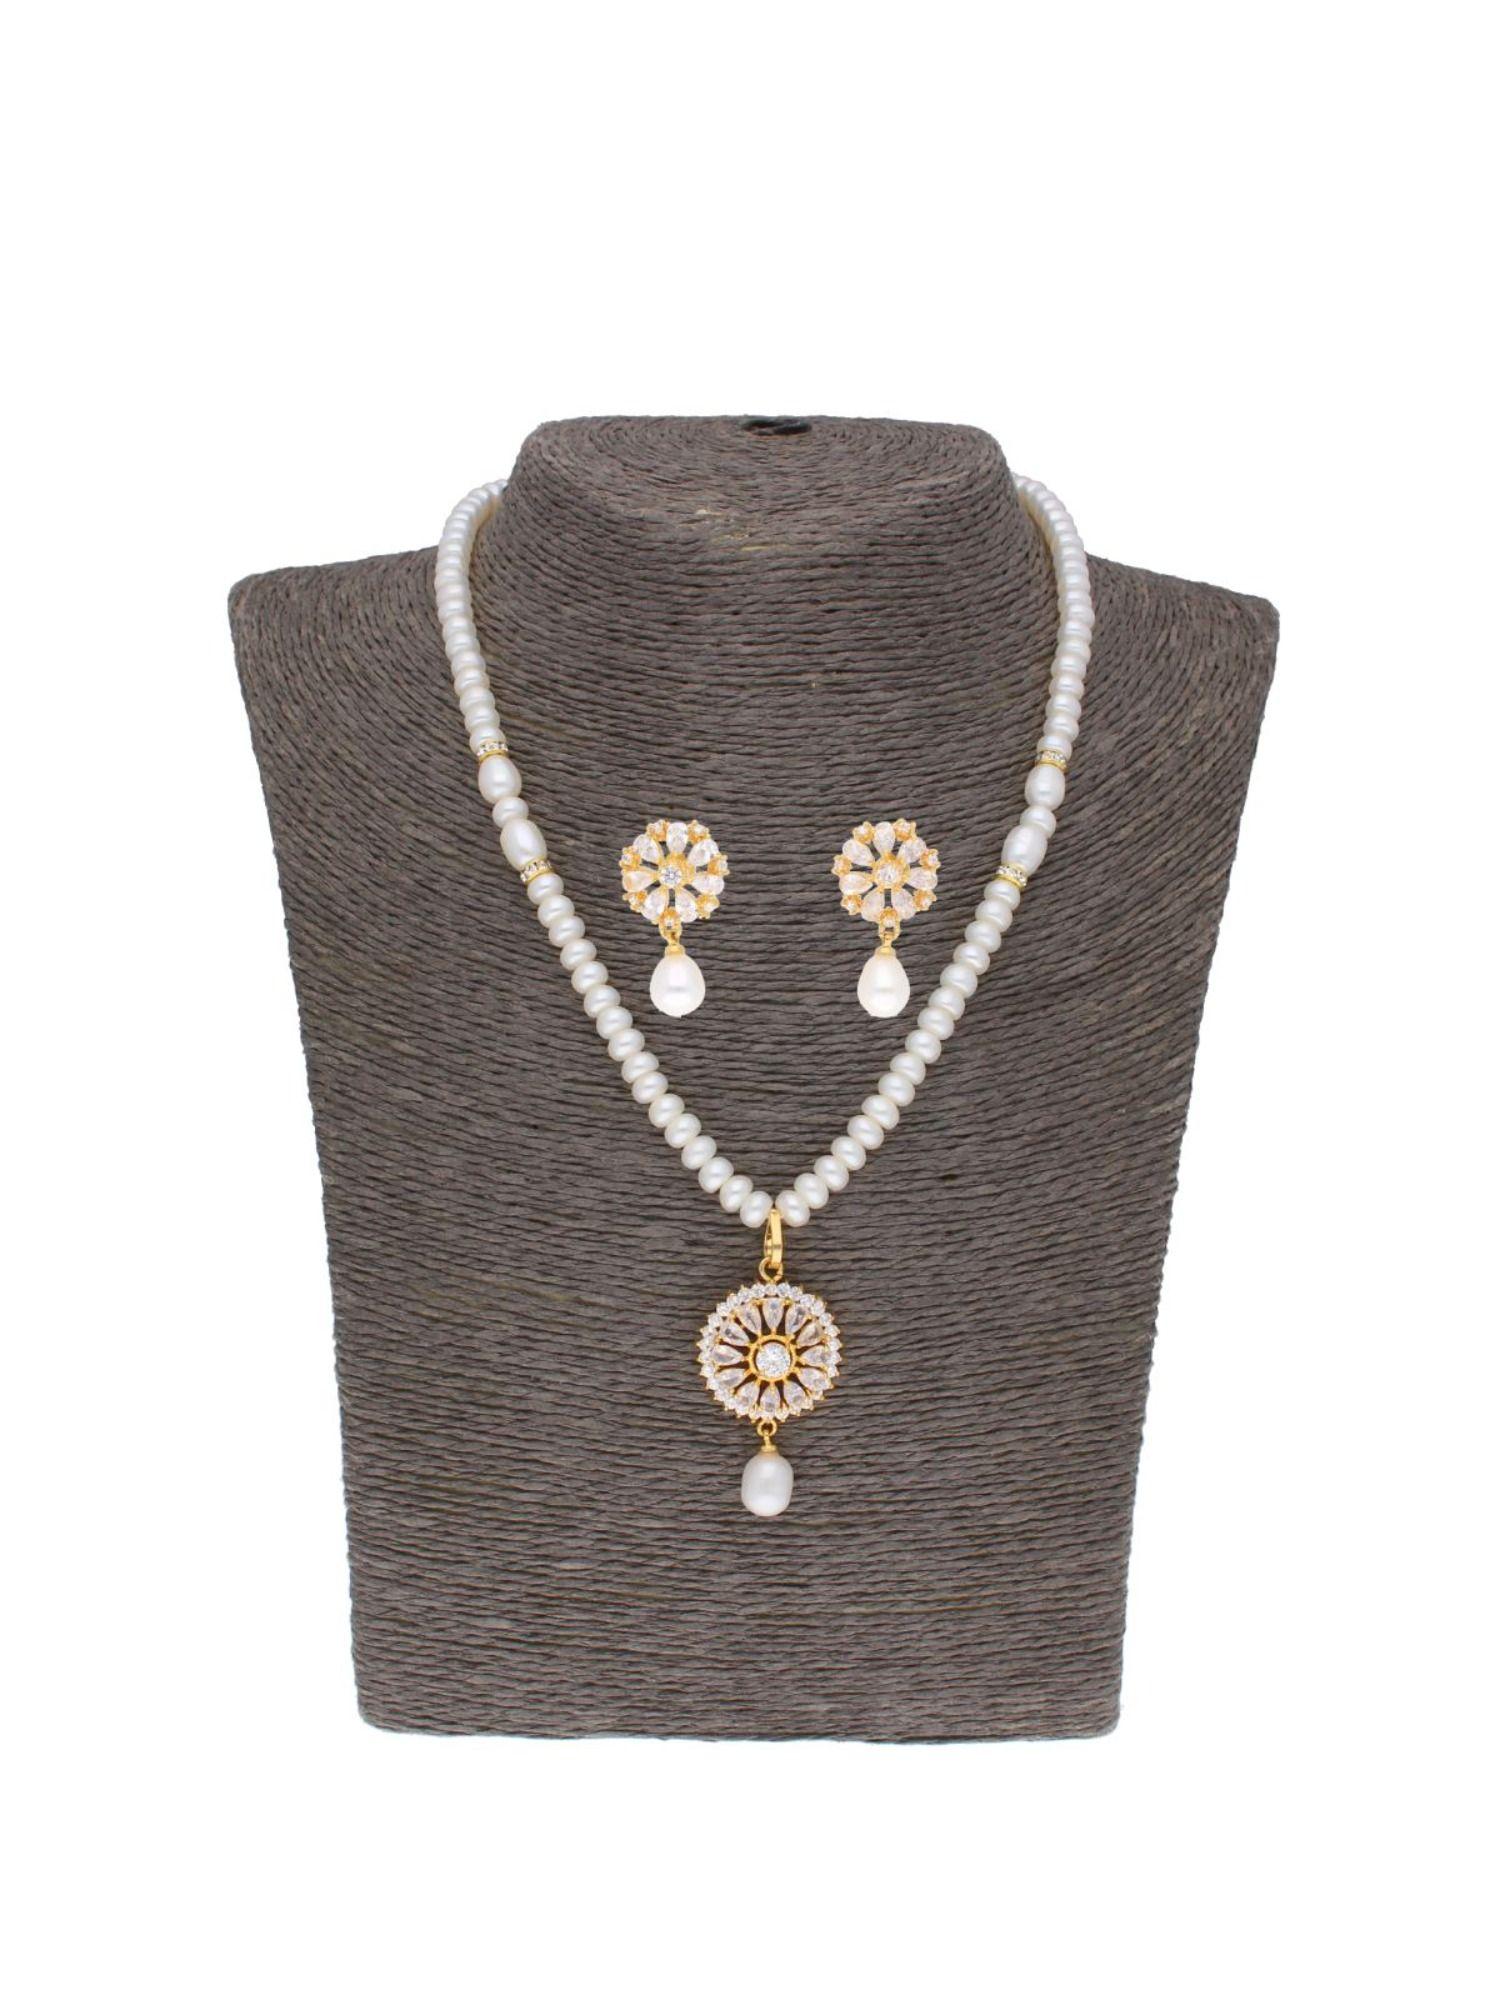 baheera pearl necklace set